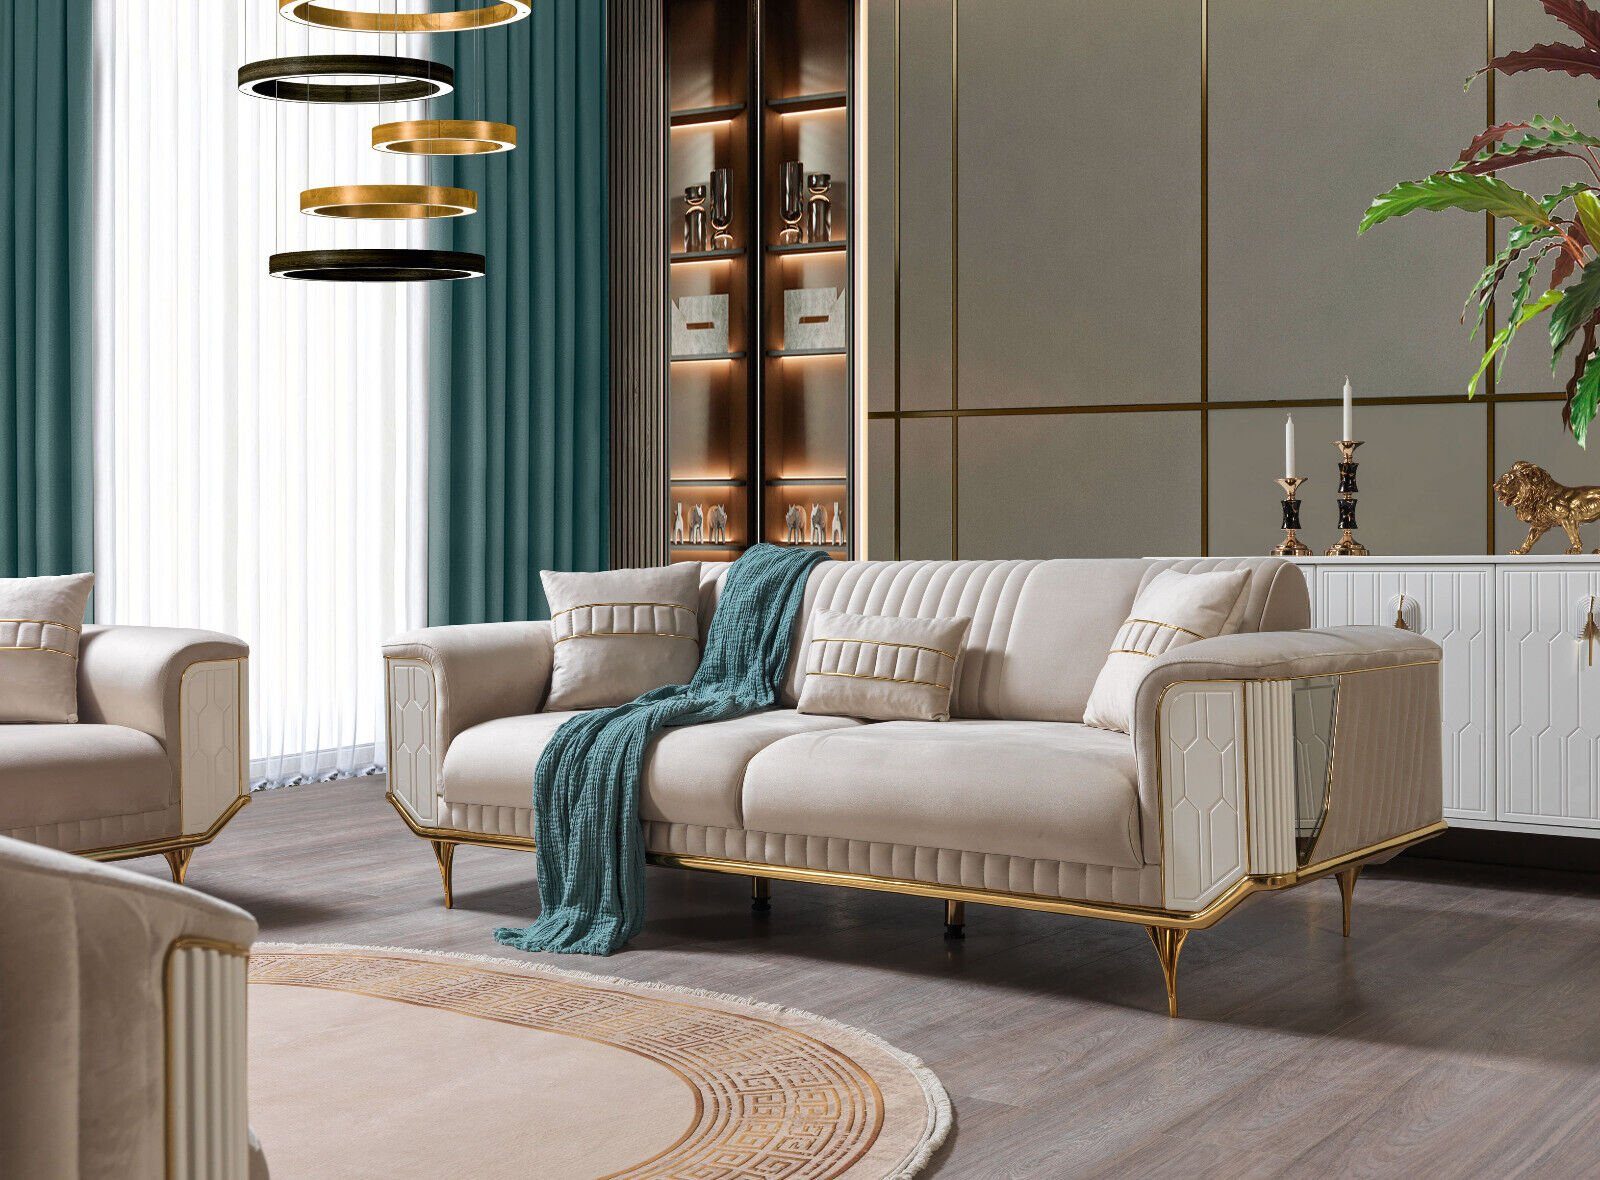 JVmoebel 3-Sitzer Luxus Sofa 3 Sitzer Wohnzimmer Beige Moderner Design 234cm, Made in Europe